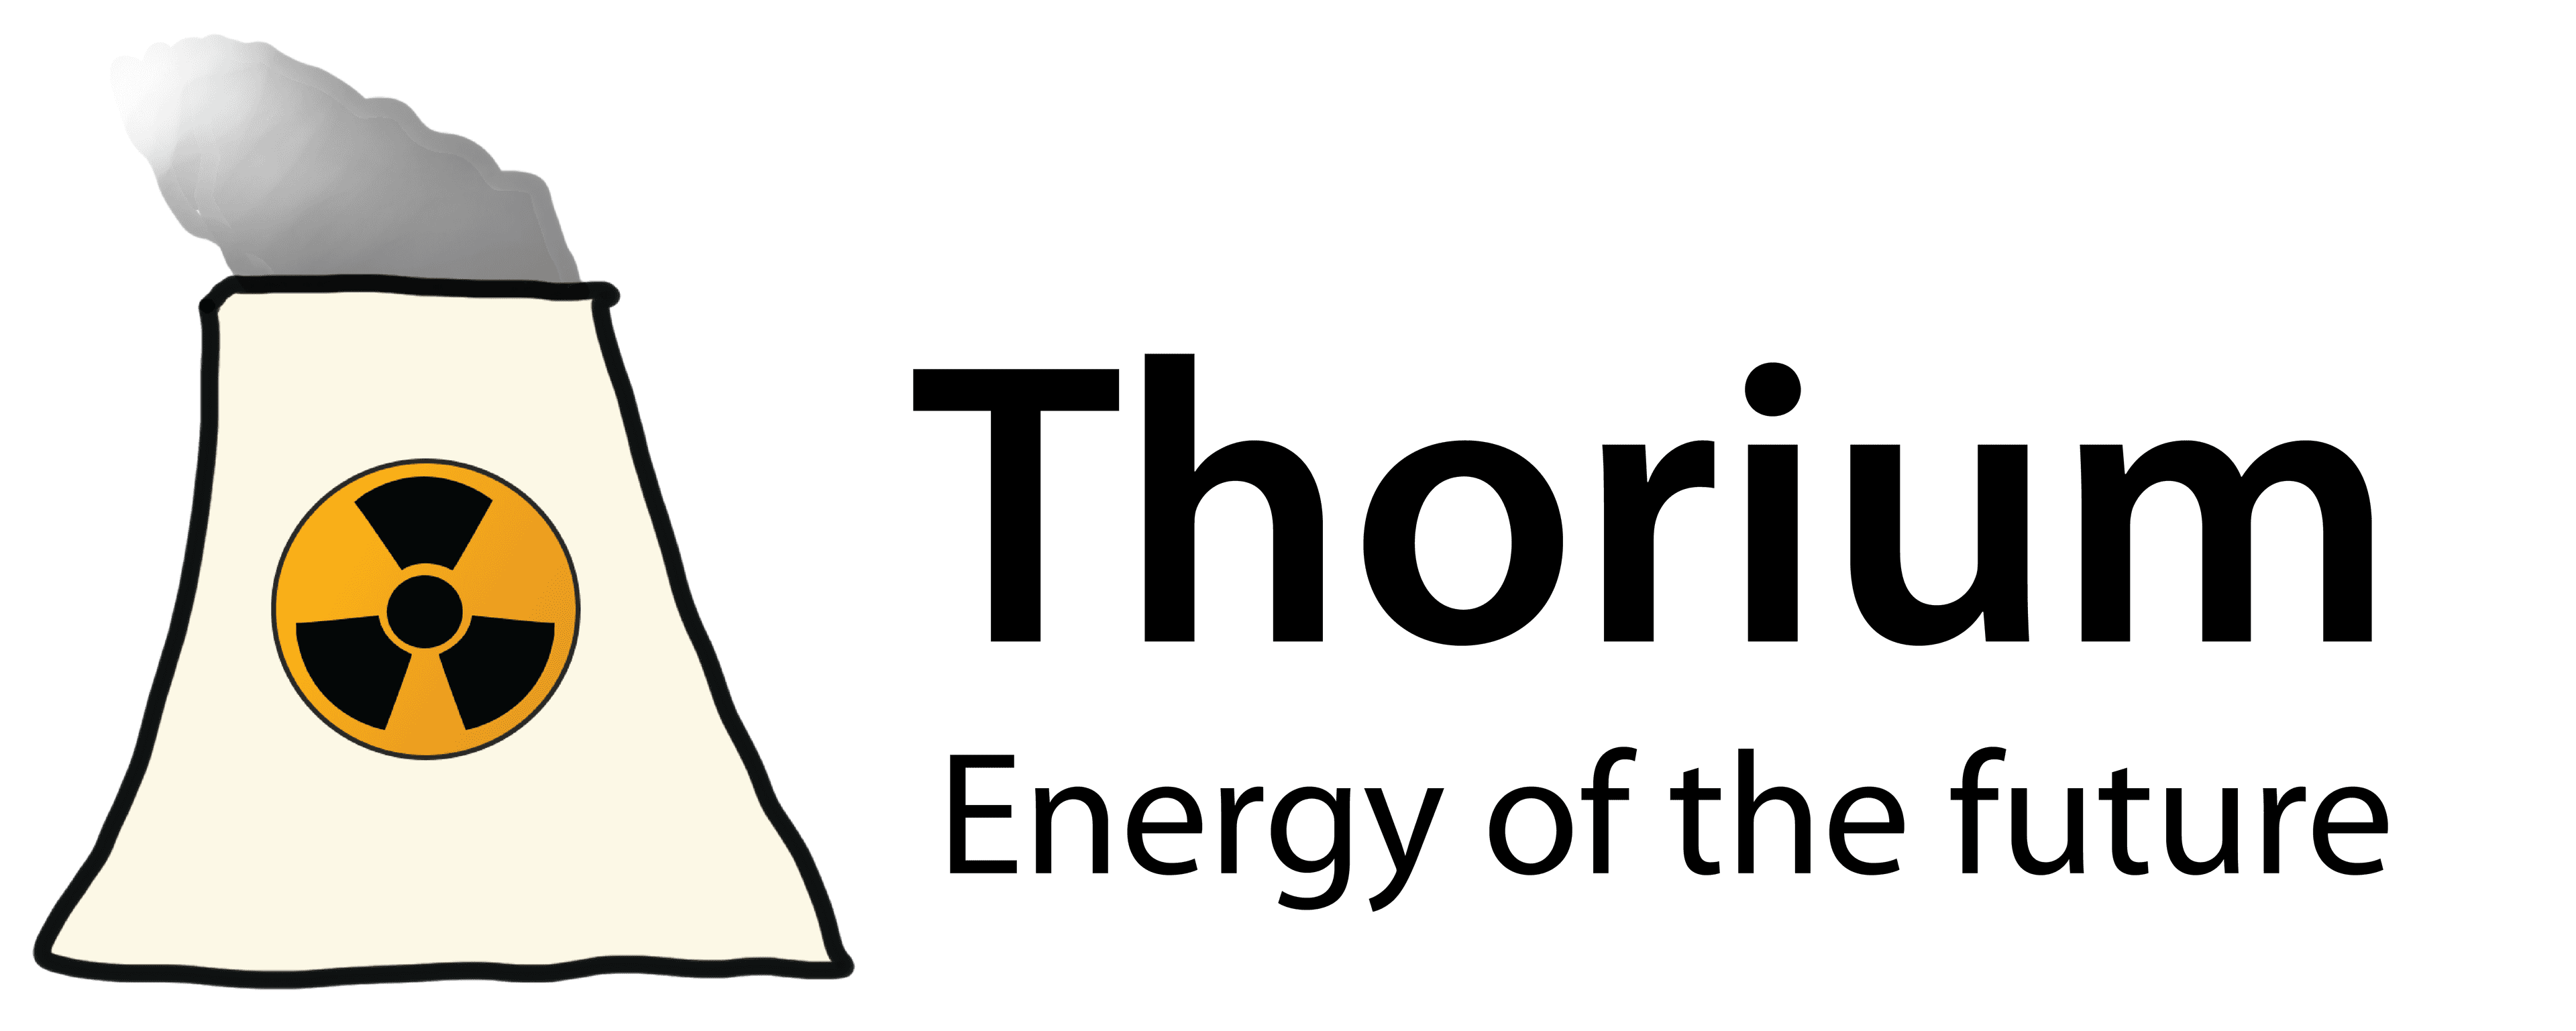 Thorium product rendering